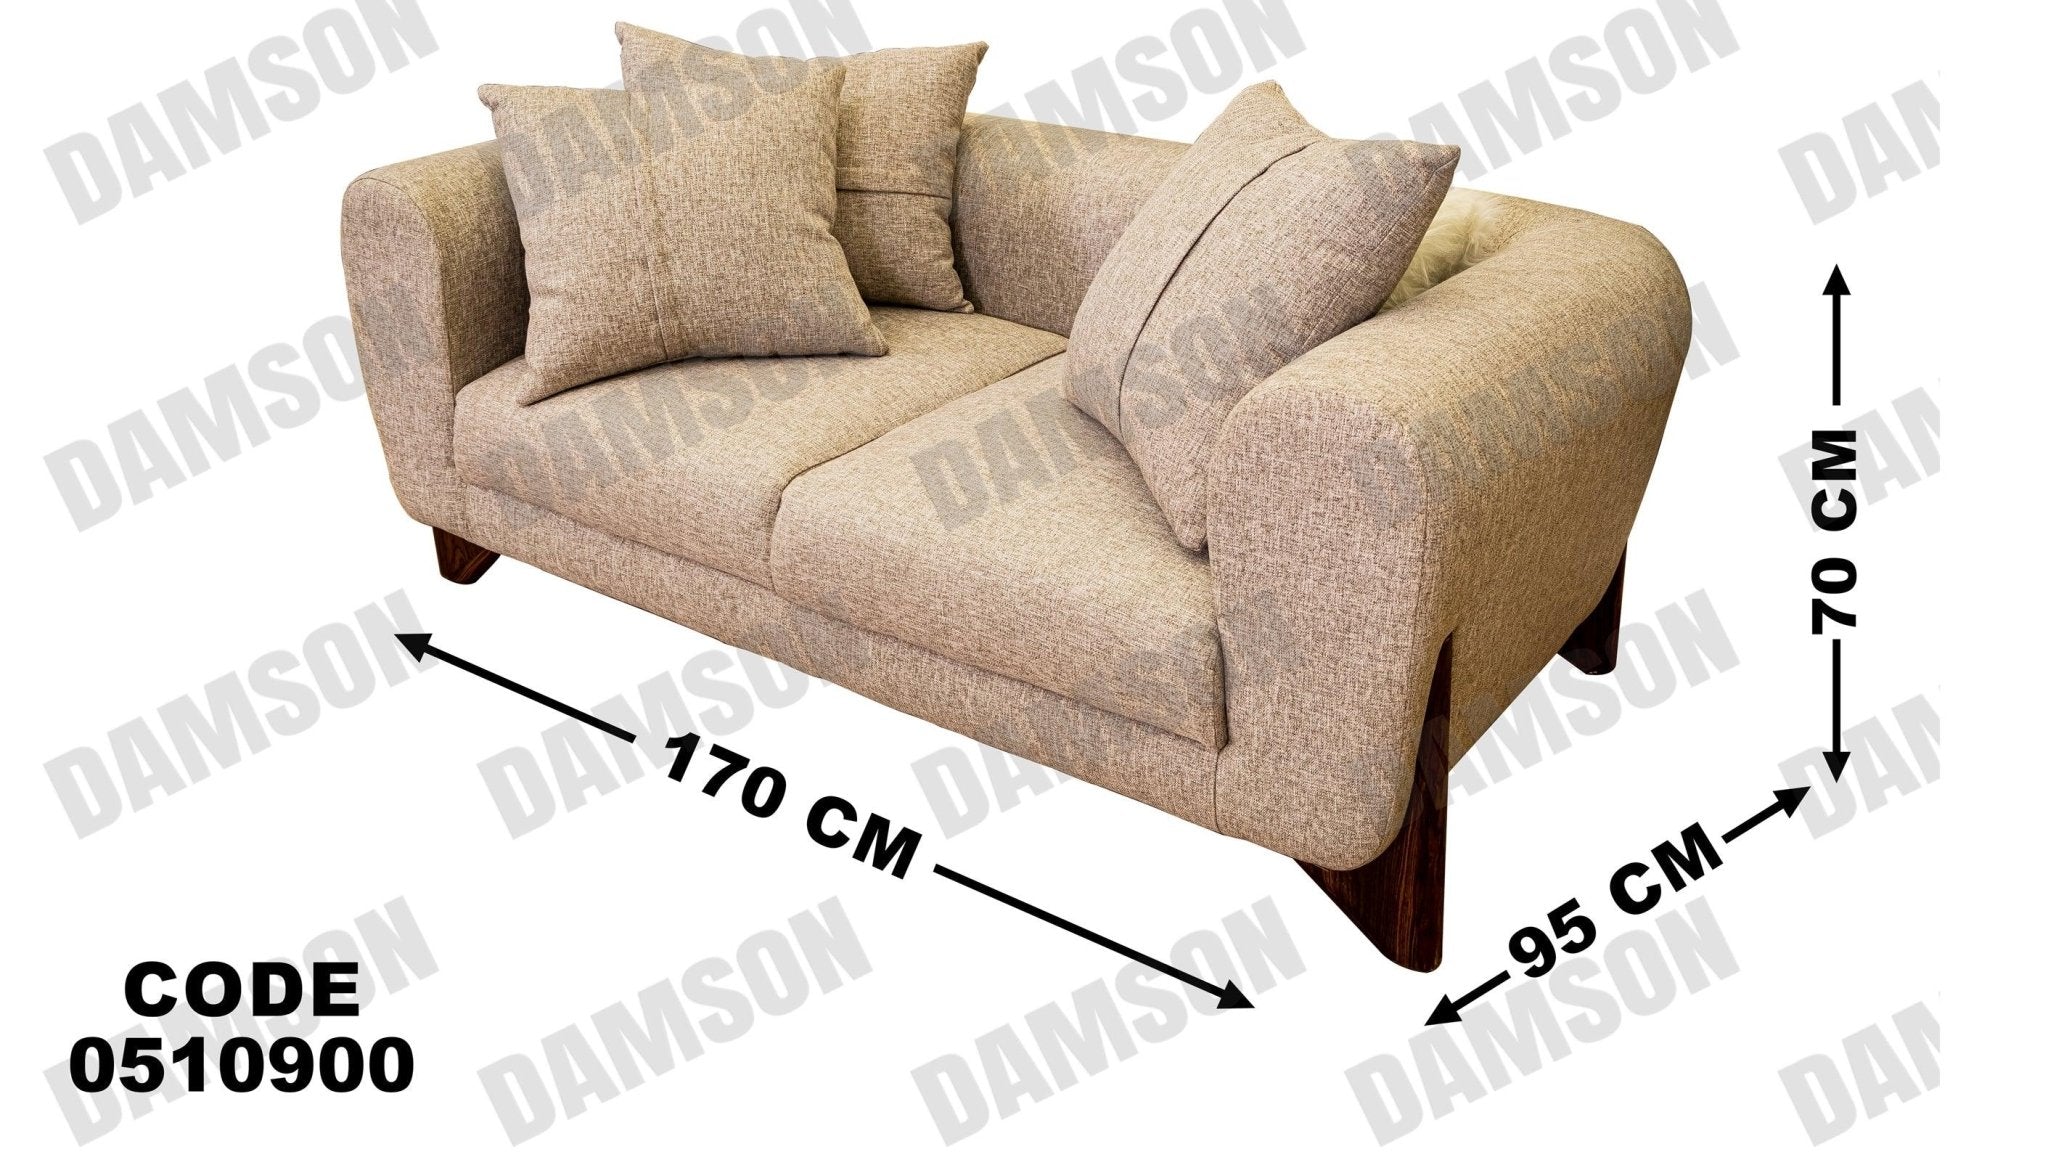 انترية 109 - Damson Furnitureانترية 109